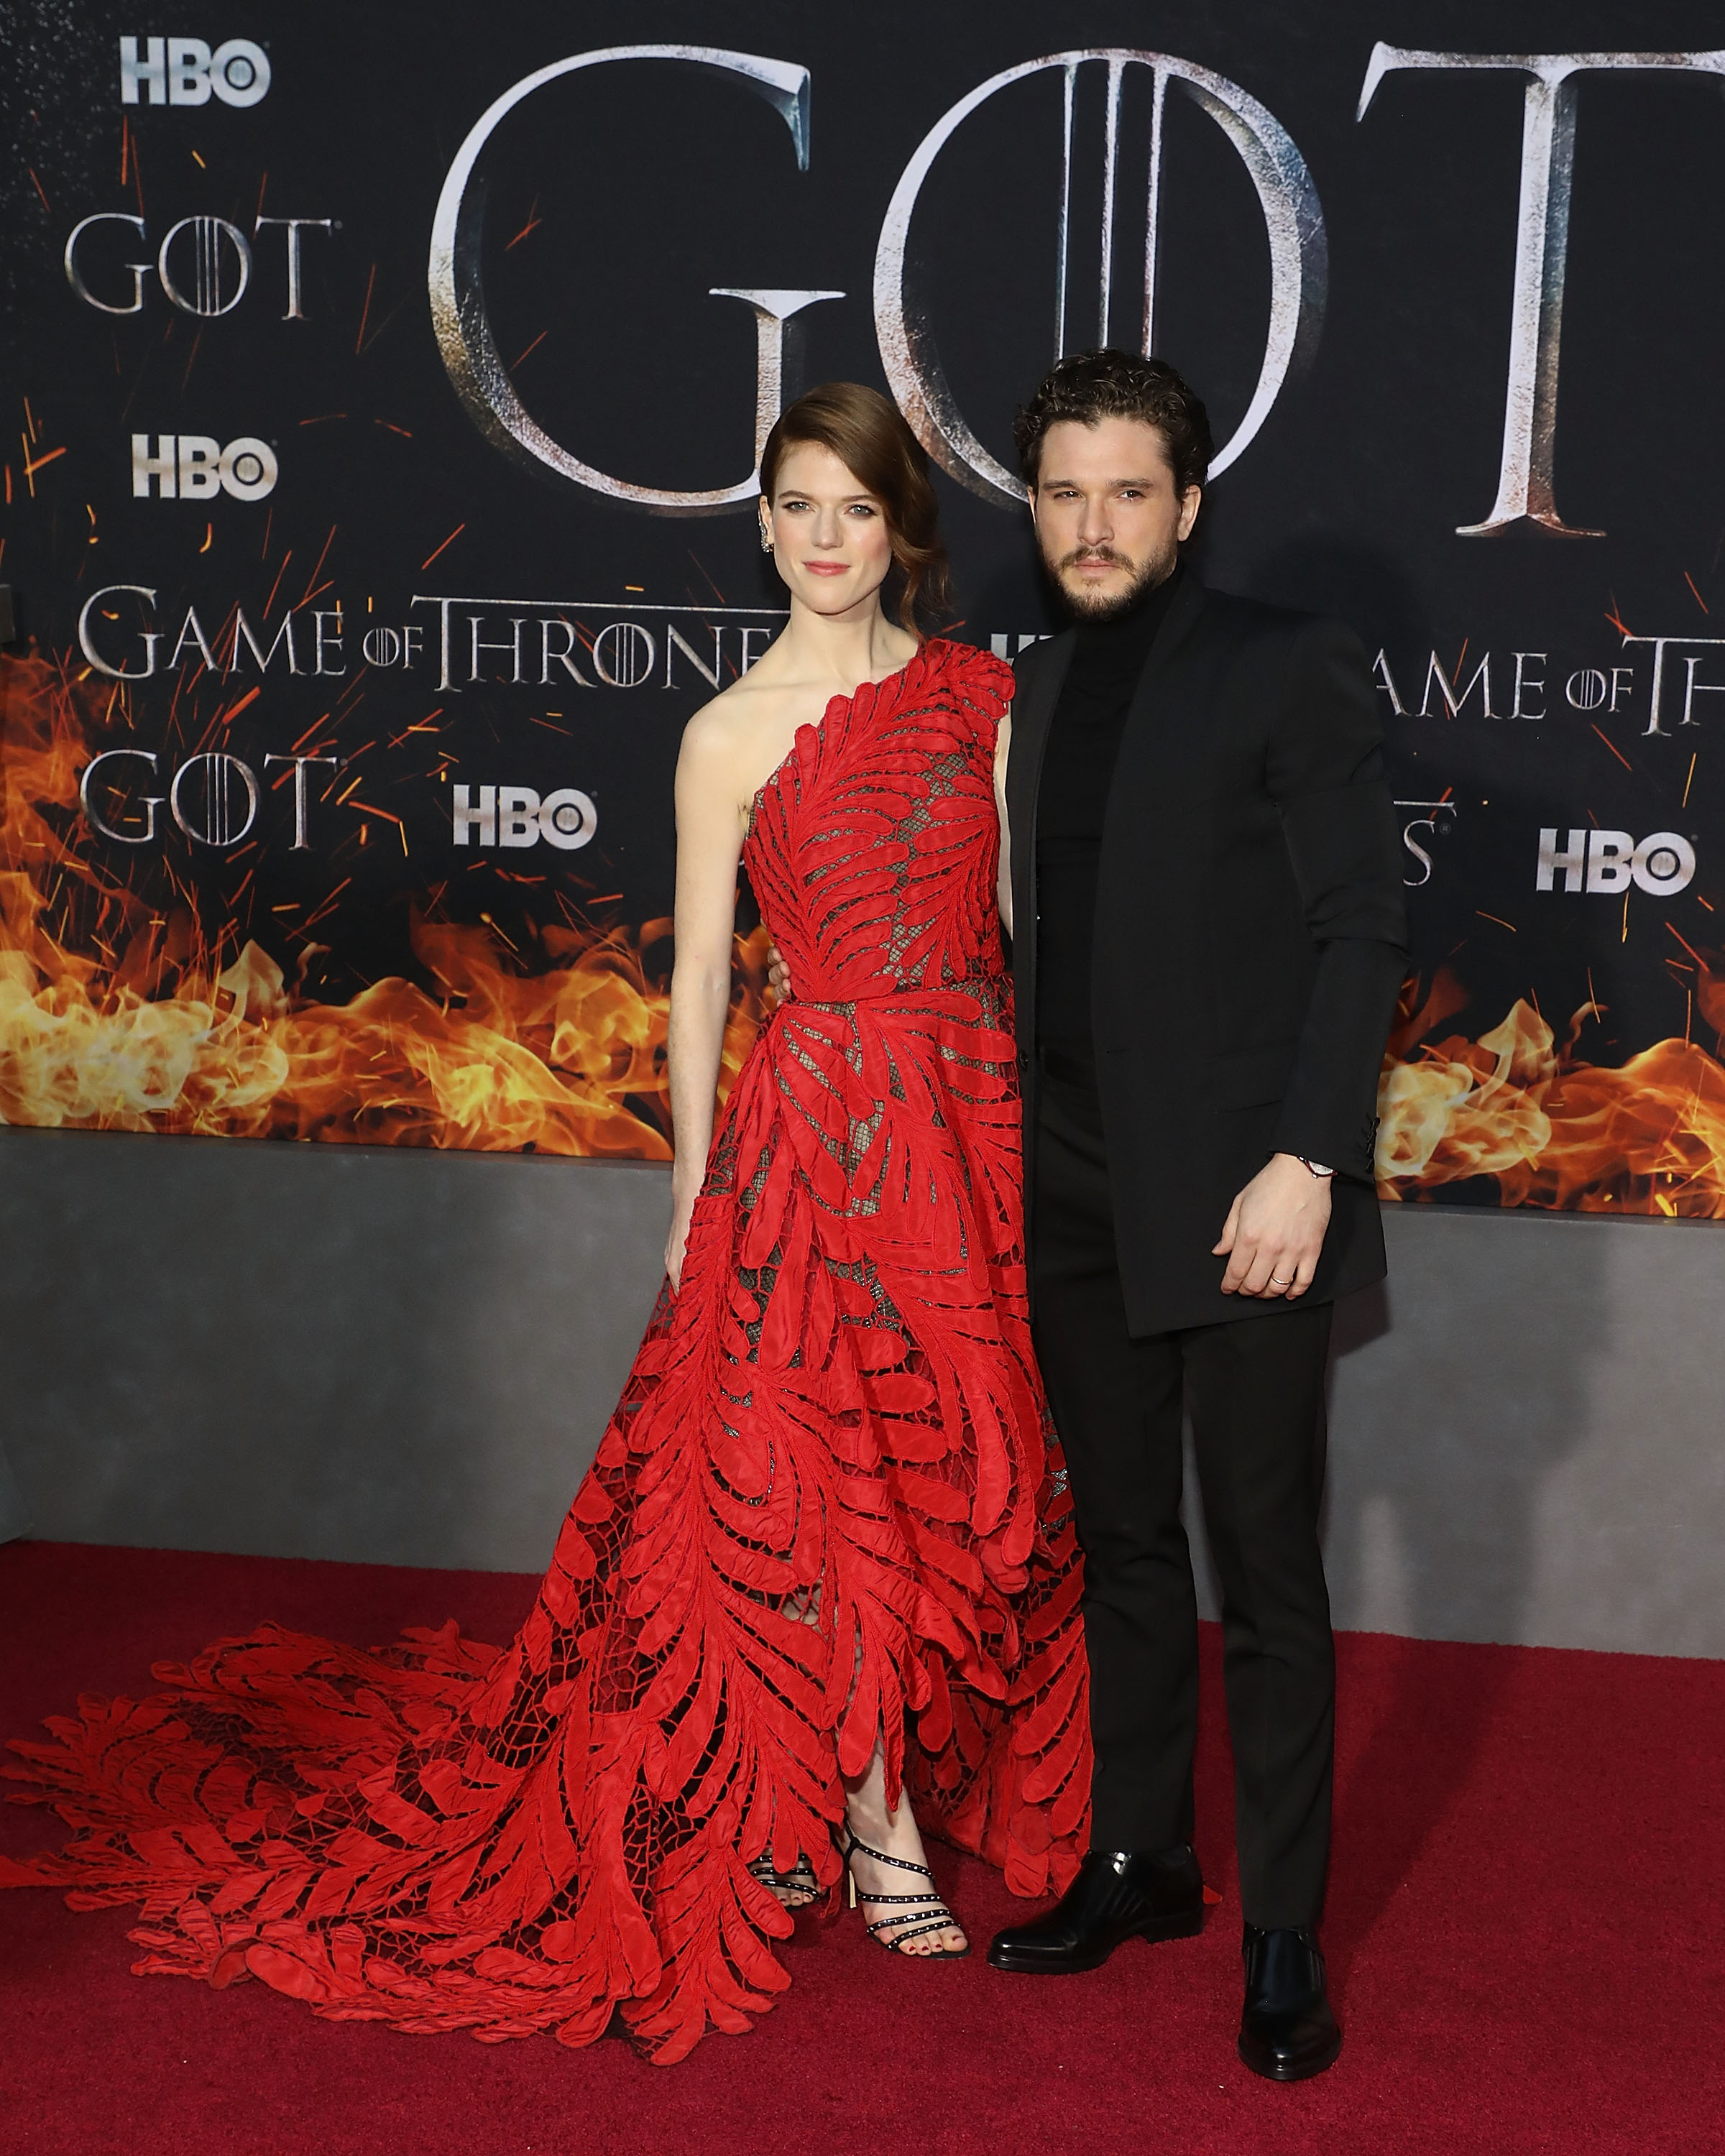 Cersei Lannister: la gran ausente en la premiere de la 8ª temporada de Game of Thrones